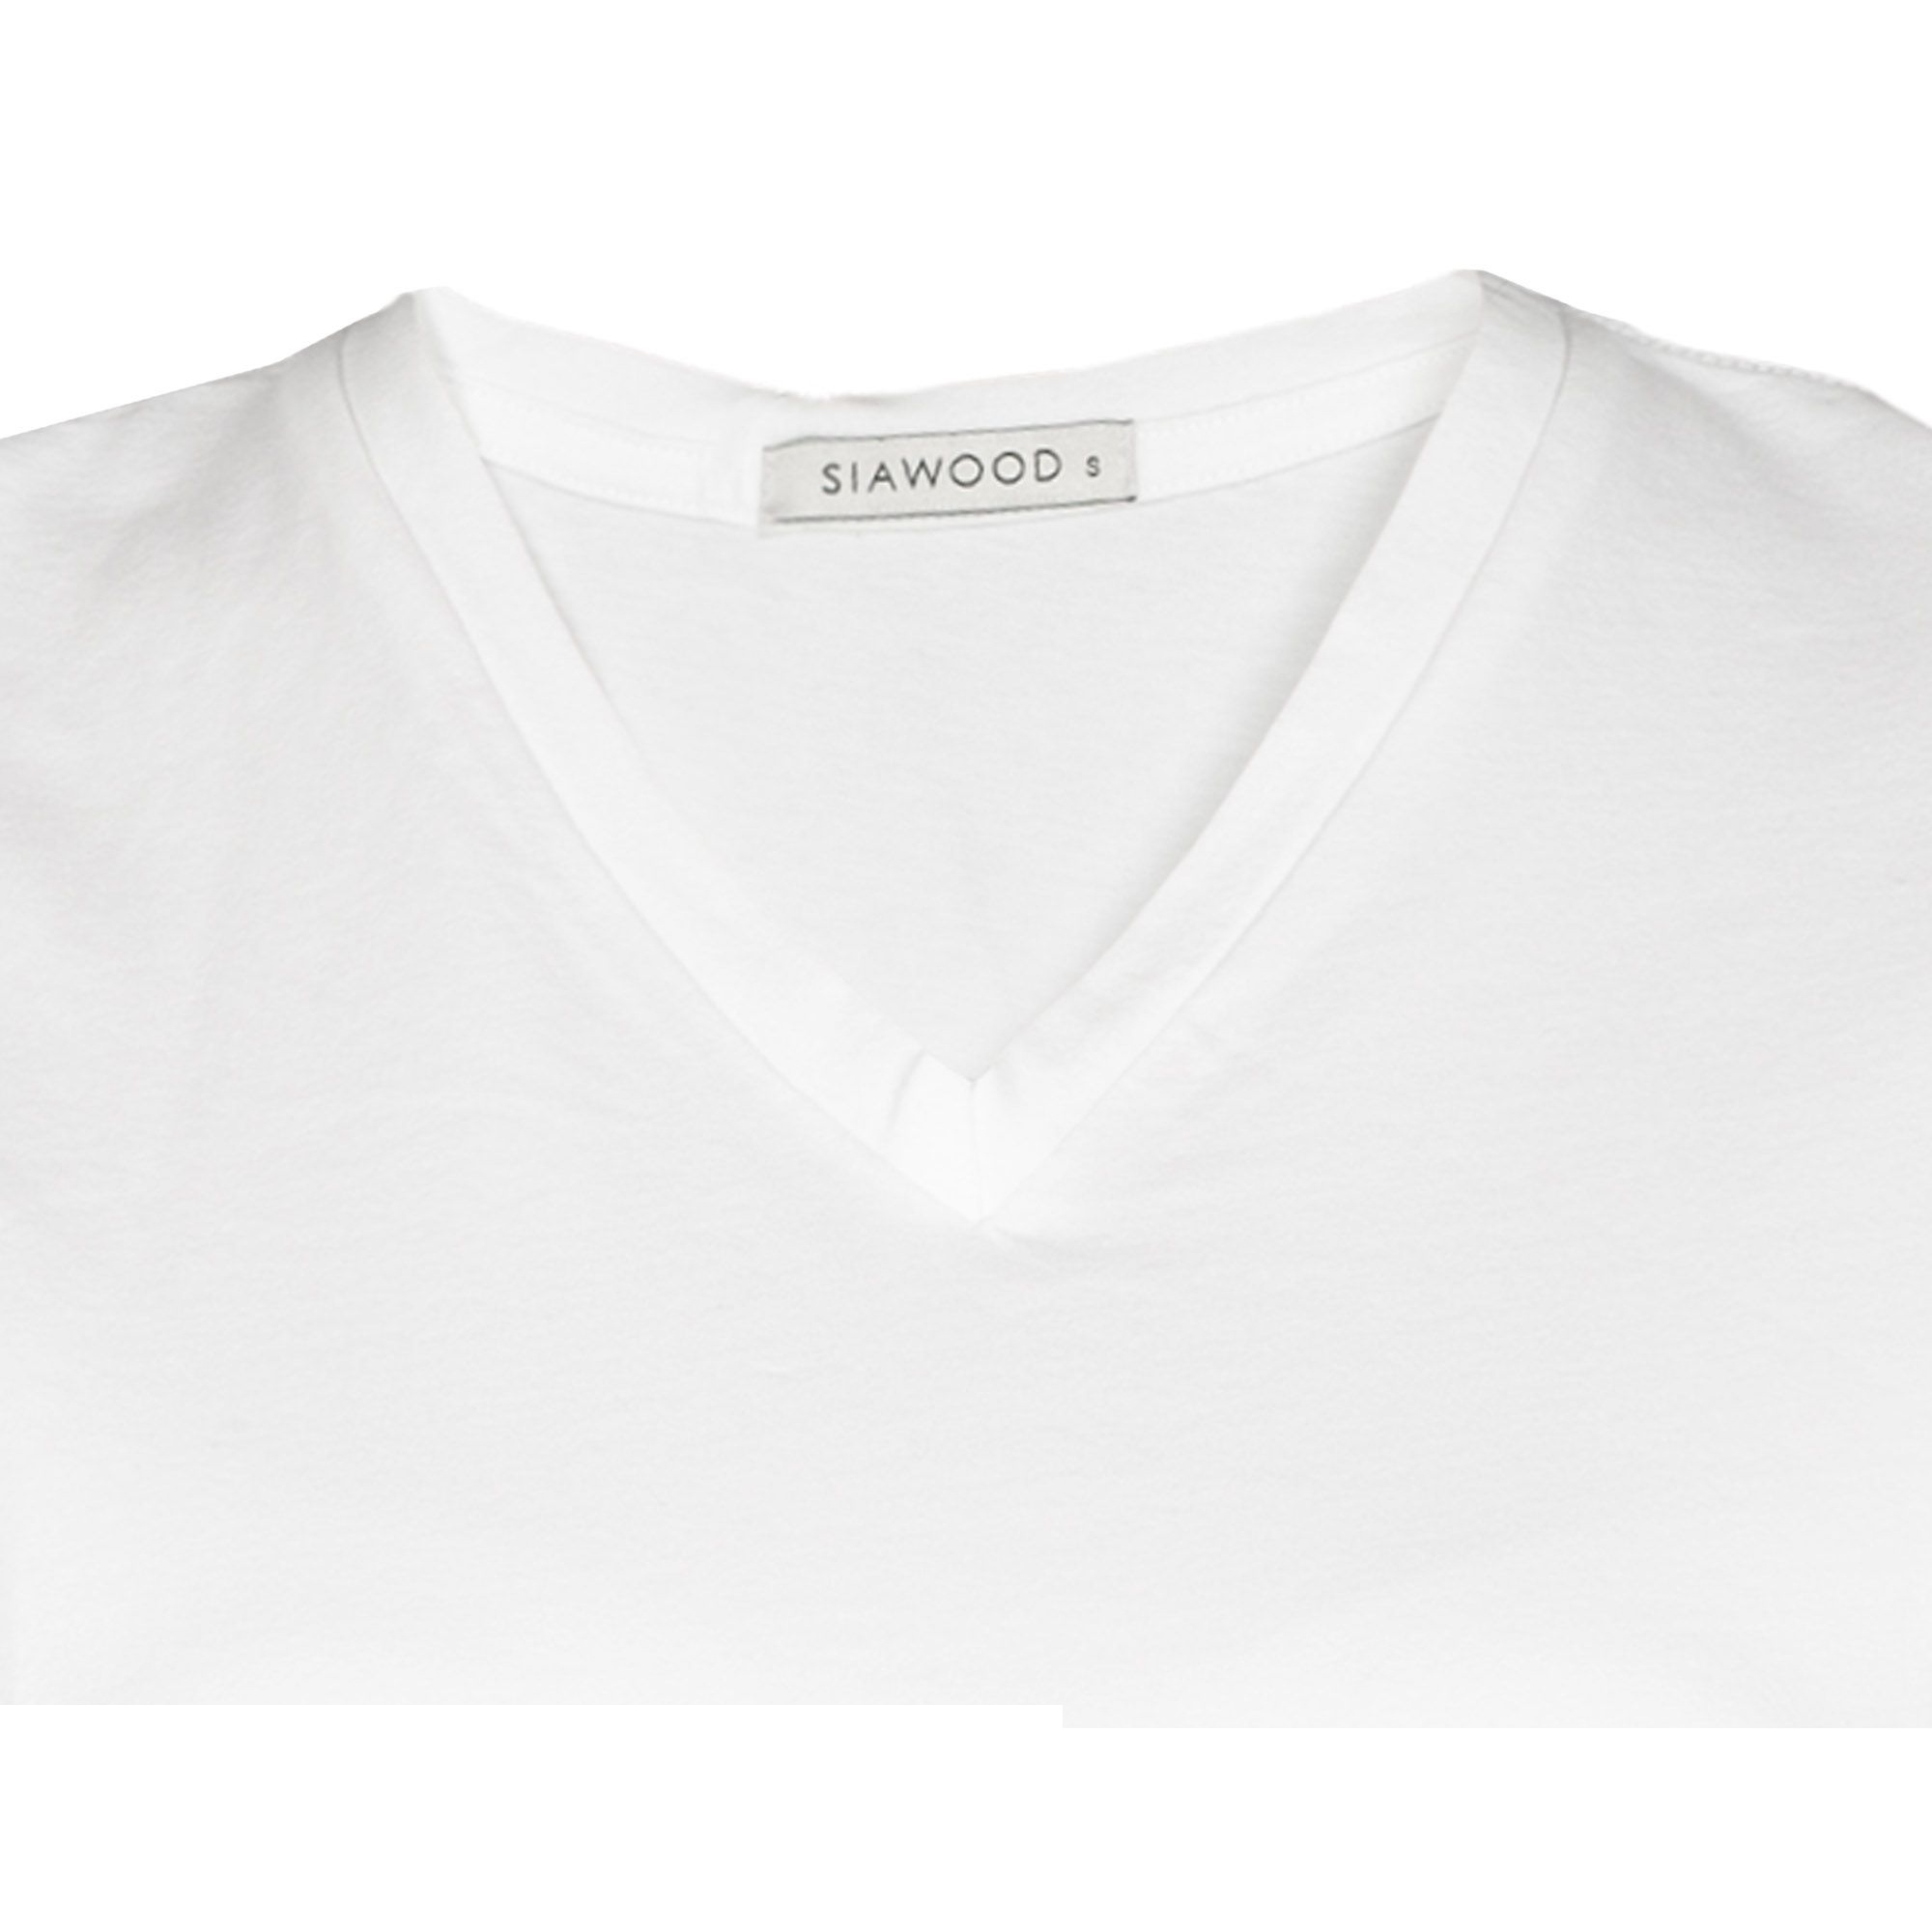 تی شرت نه سیاوود مدل V-BSC کد 6100400-W0000 رنگ سفید